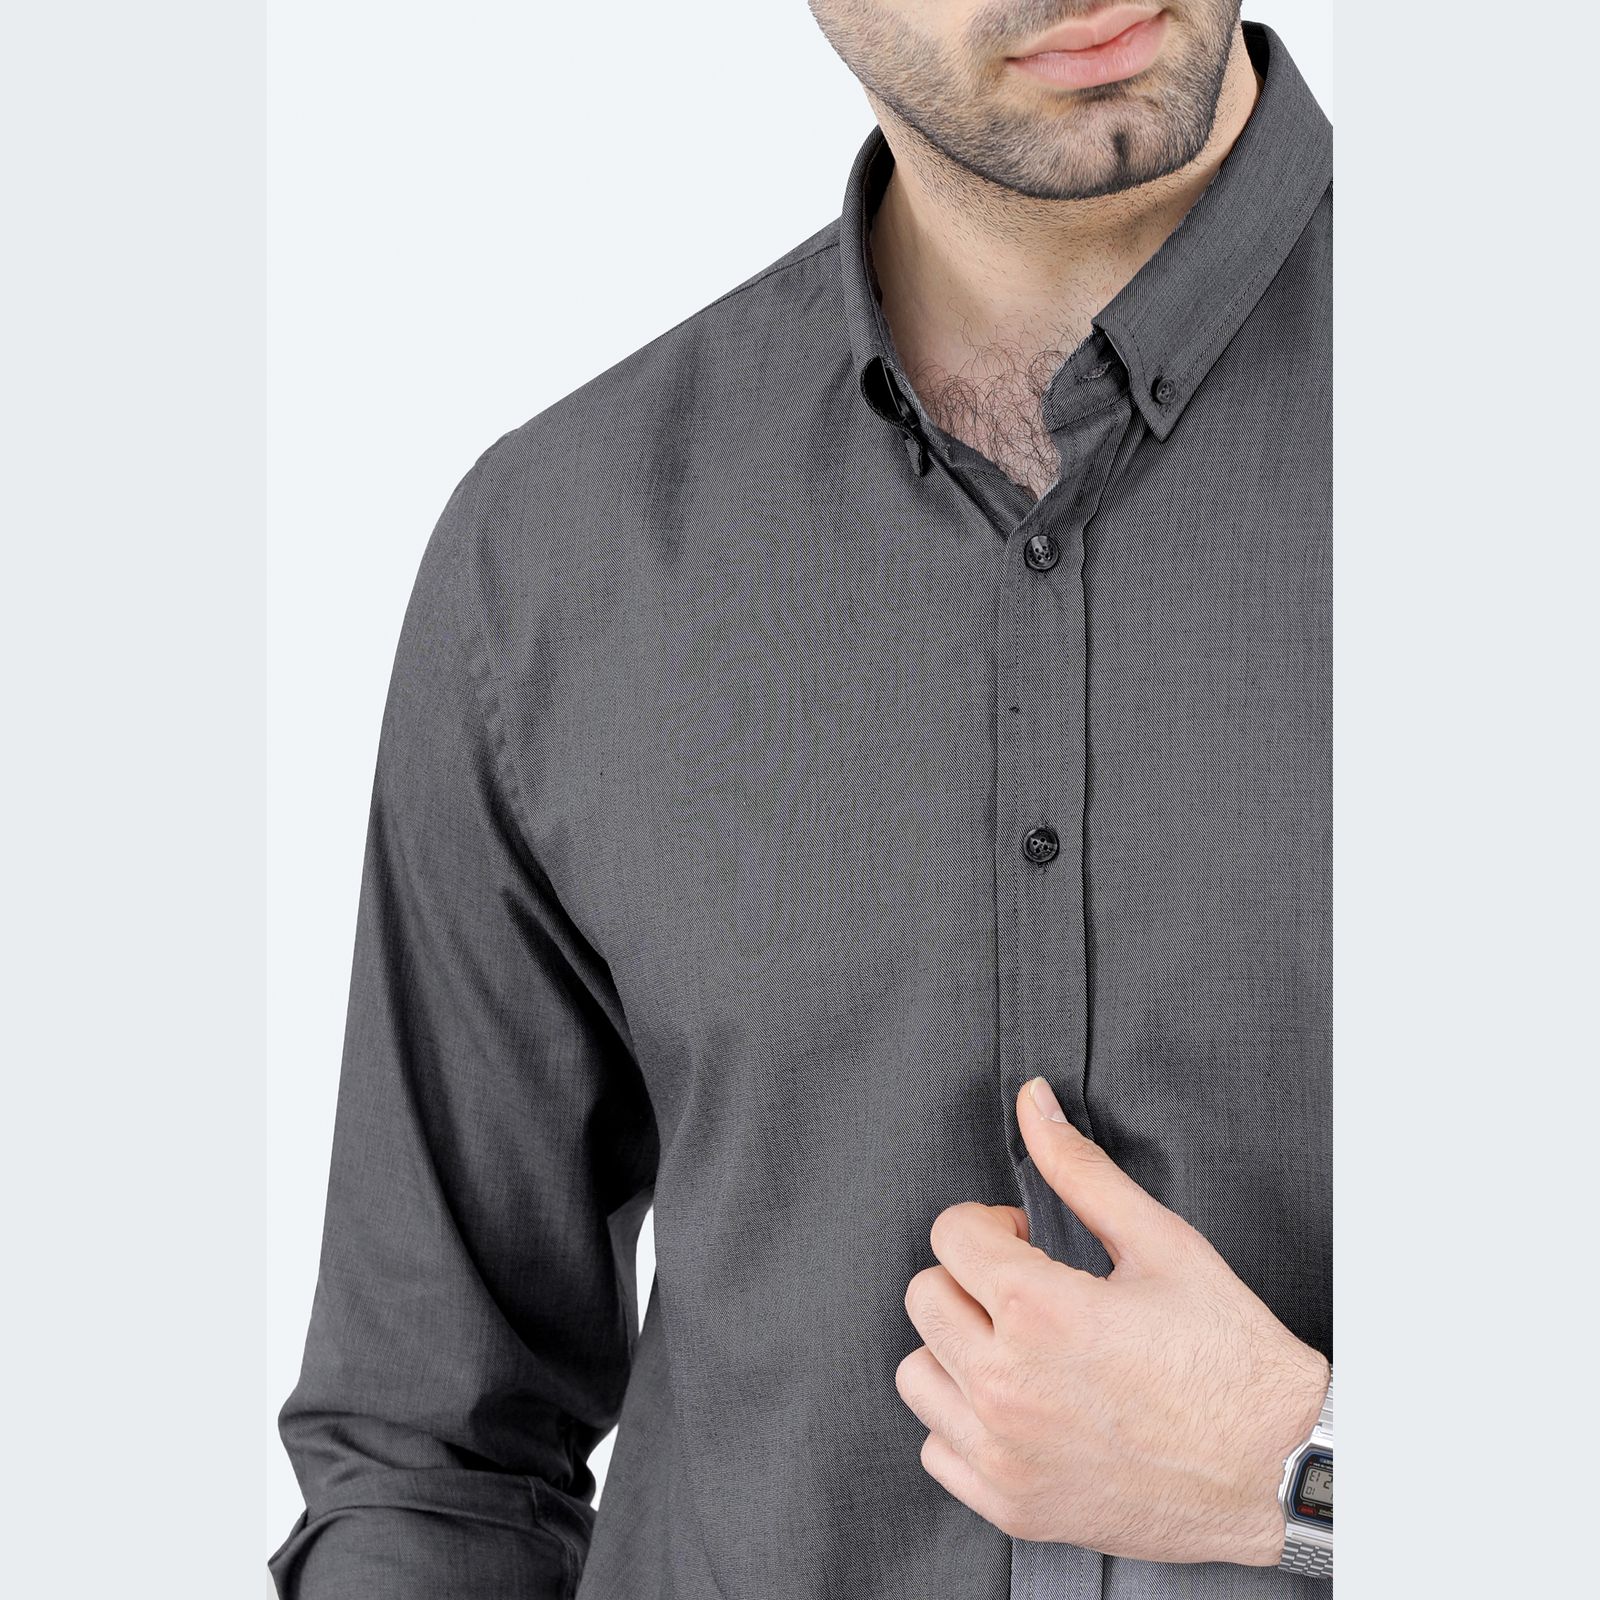 پیراهن آستین بلند مردانه پاتن جامه مدل تترون 102821020284842 رنگ طوسی -  - 5